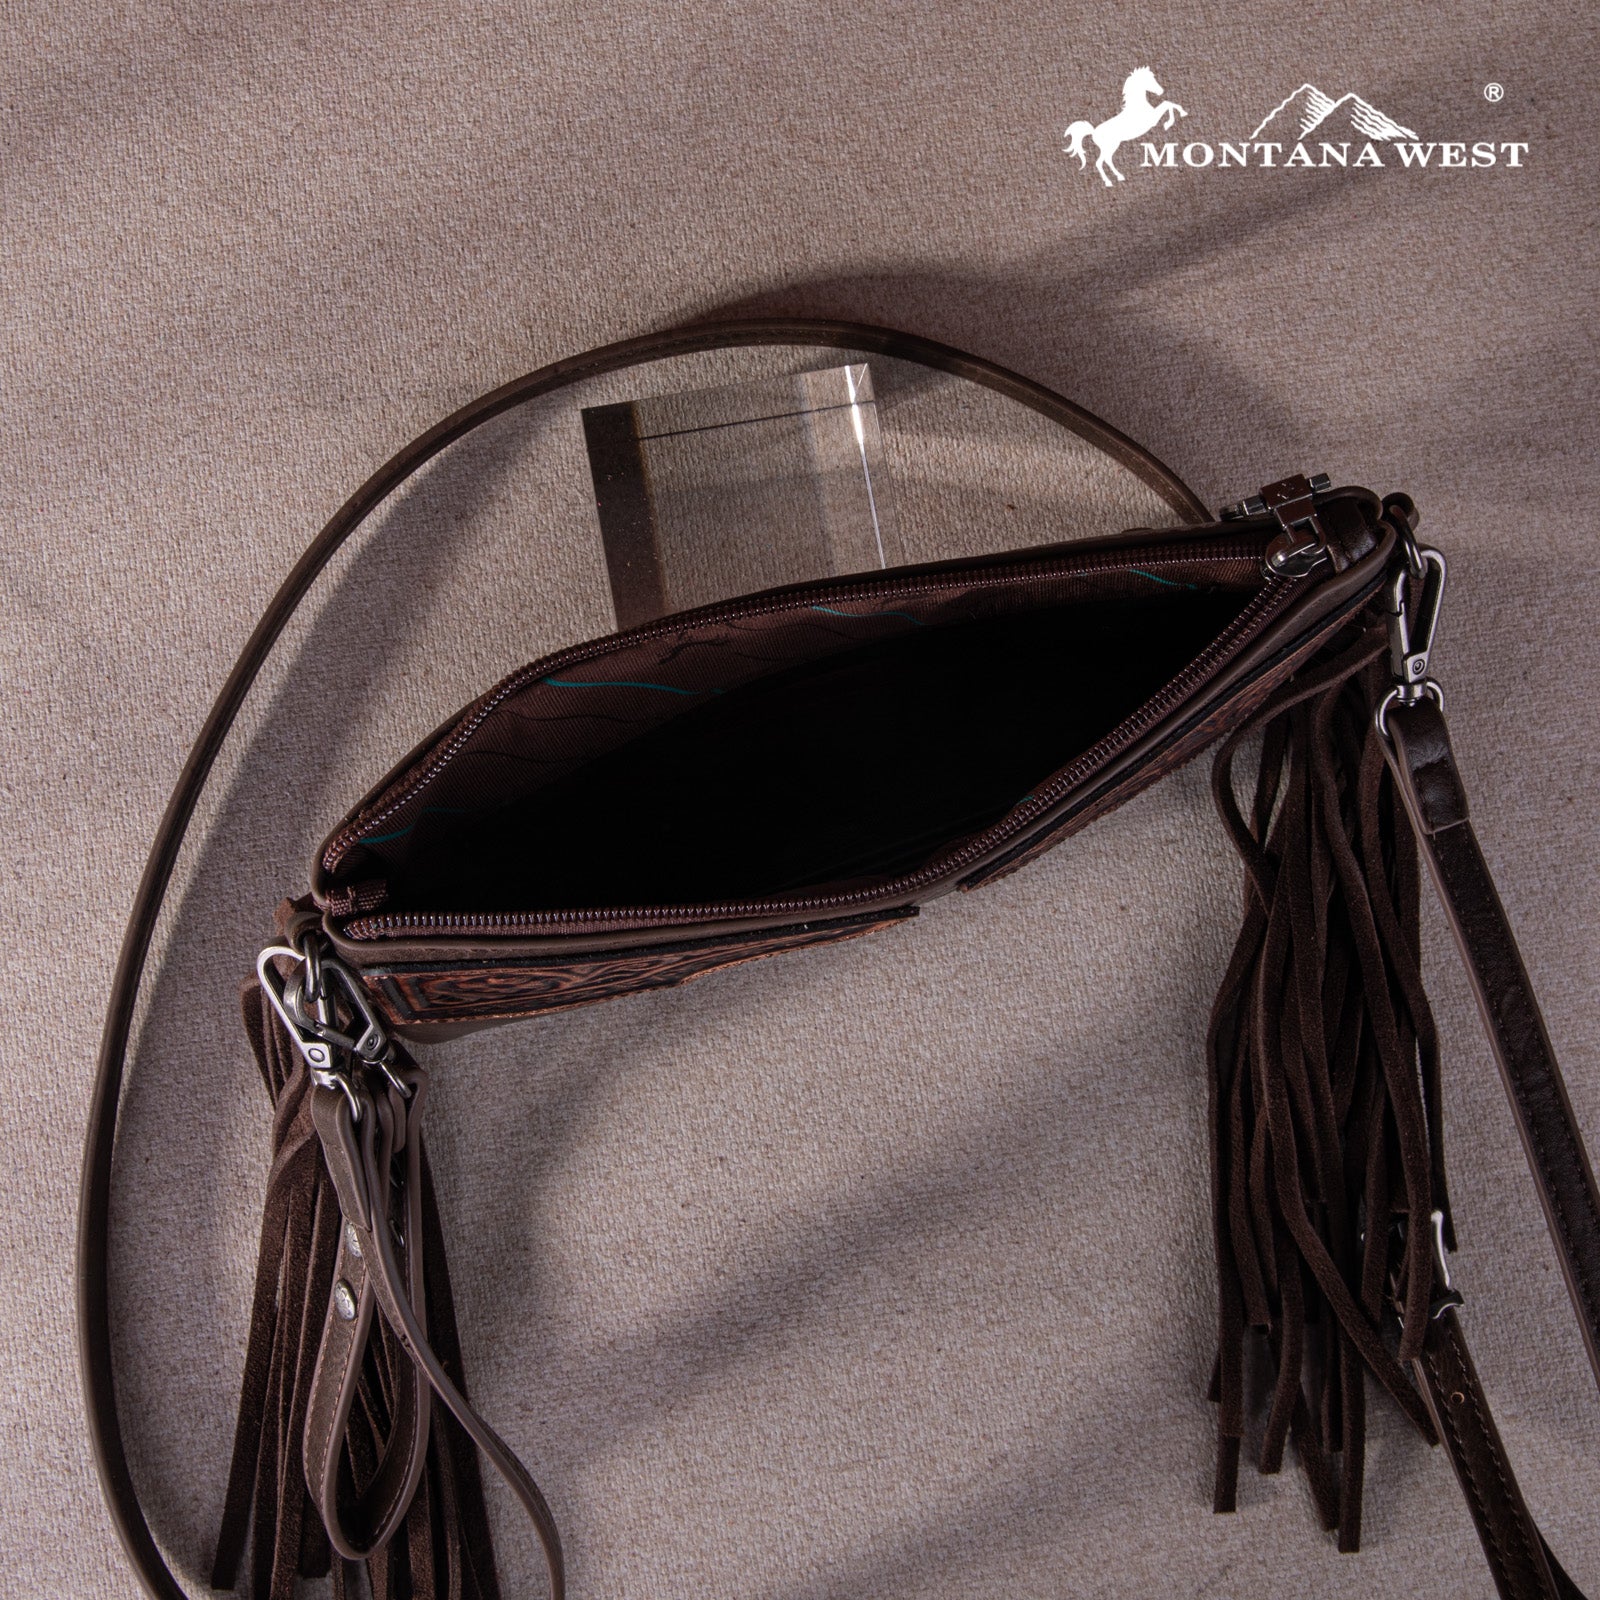 Montana West Fringe Leather Handbag